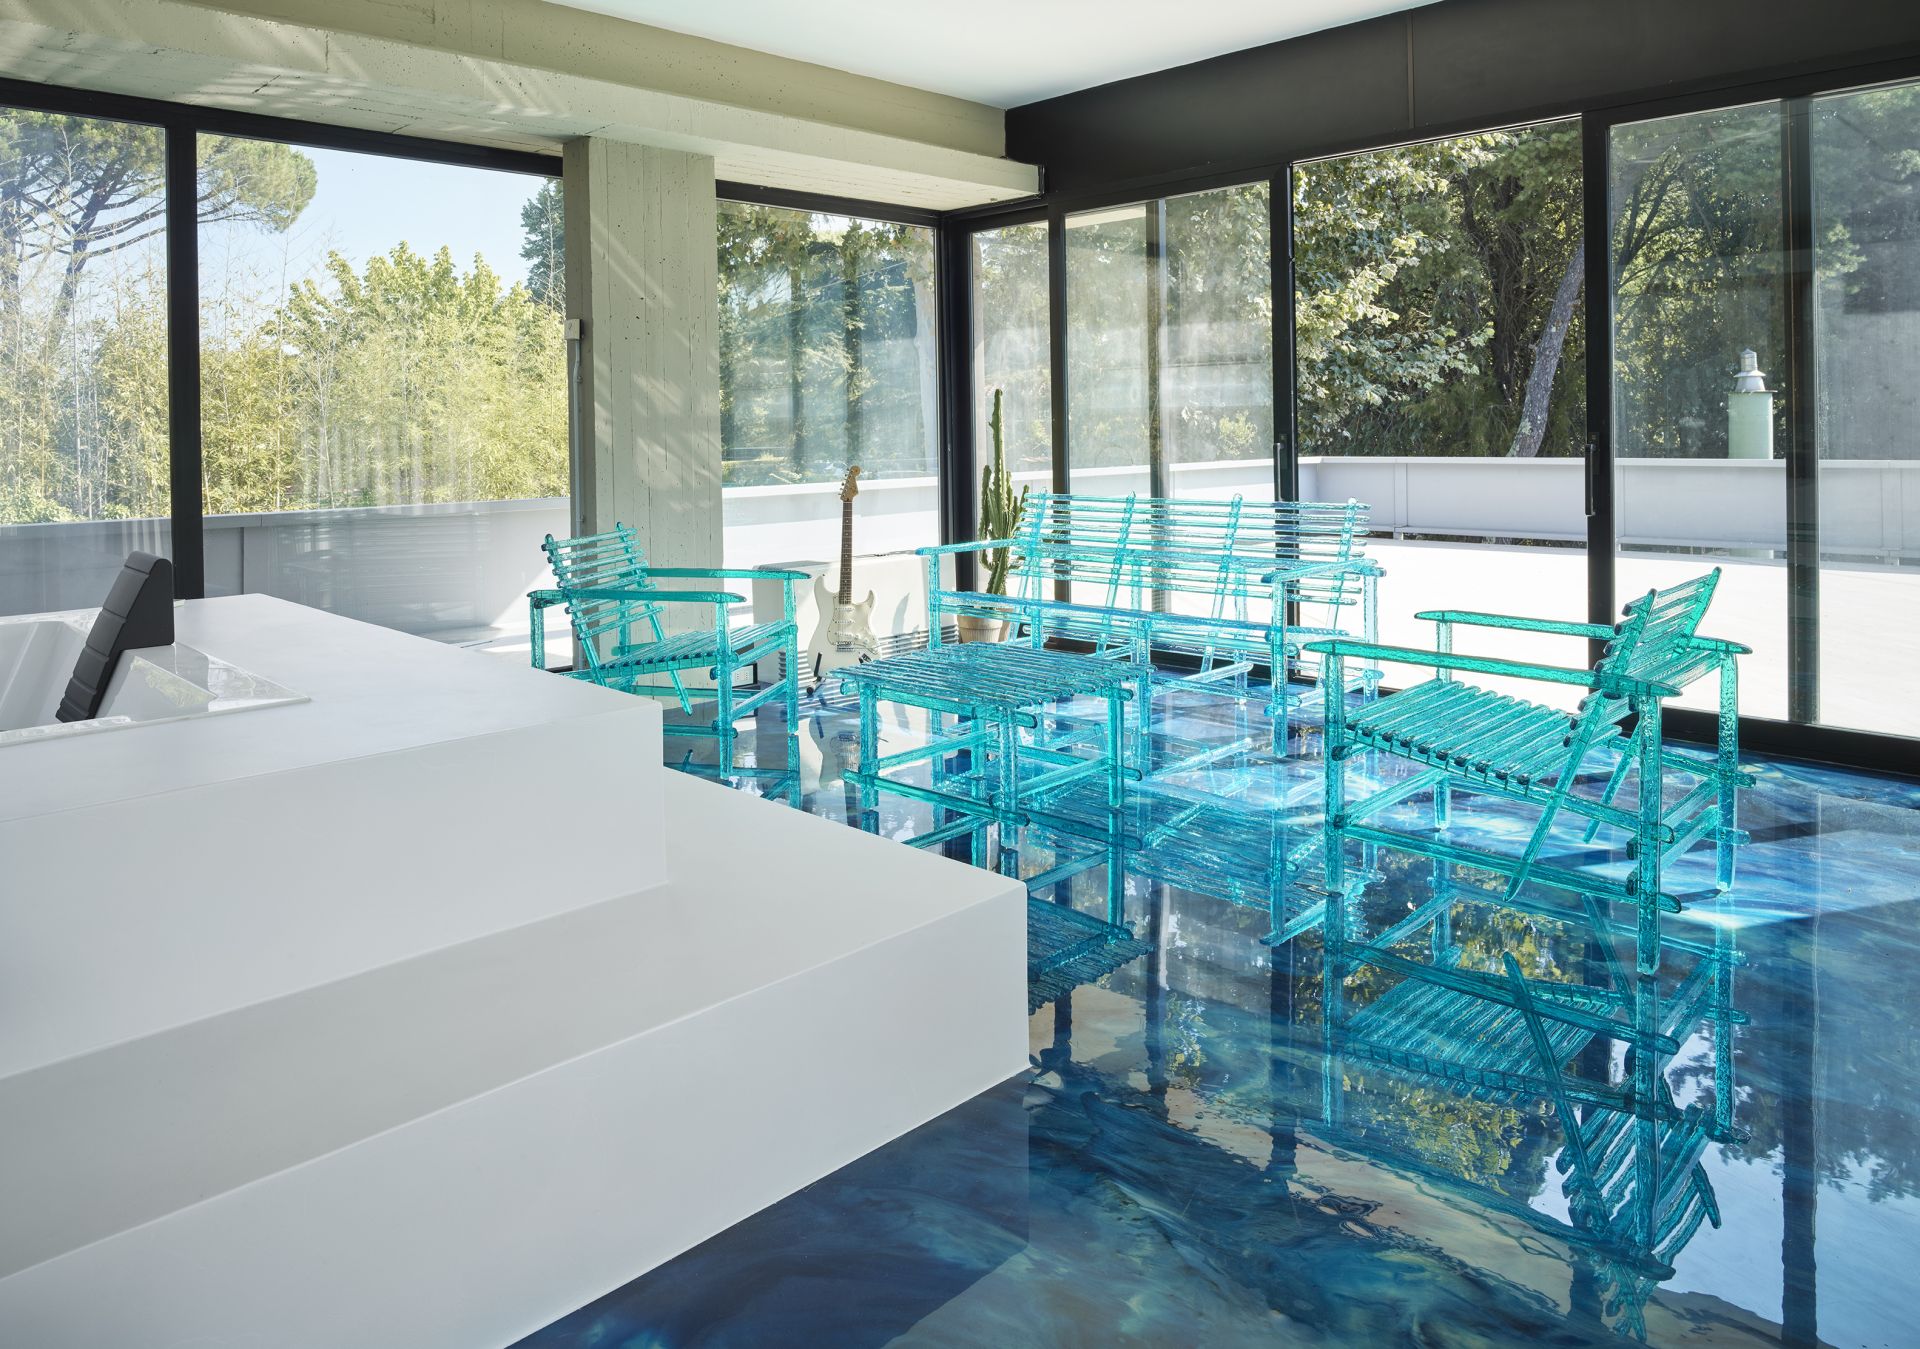 Villa in cemento e vetro immersa nel verde - Arch. Alberto Paoli - image 10